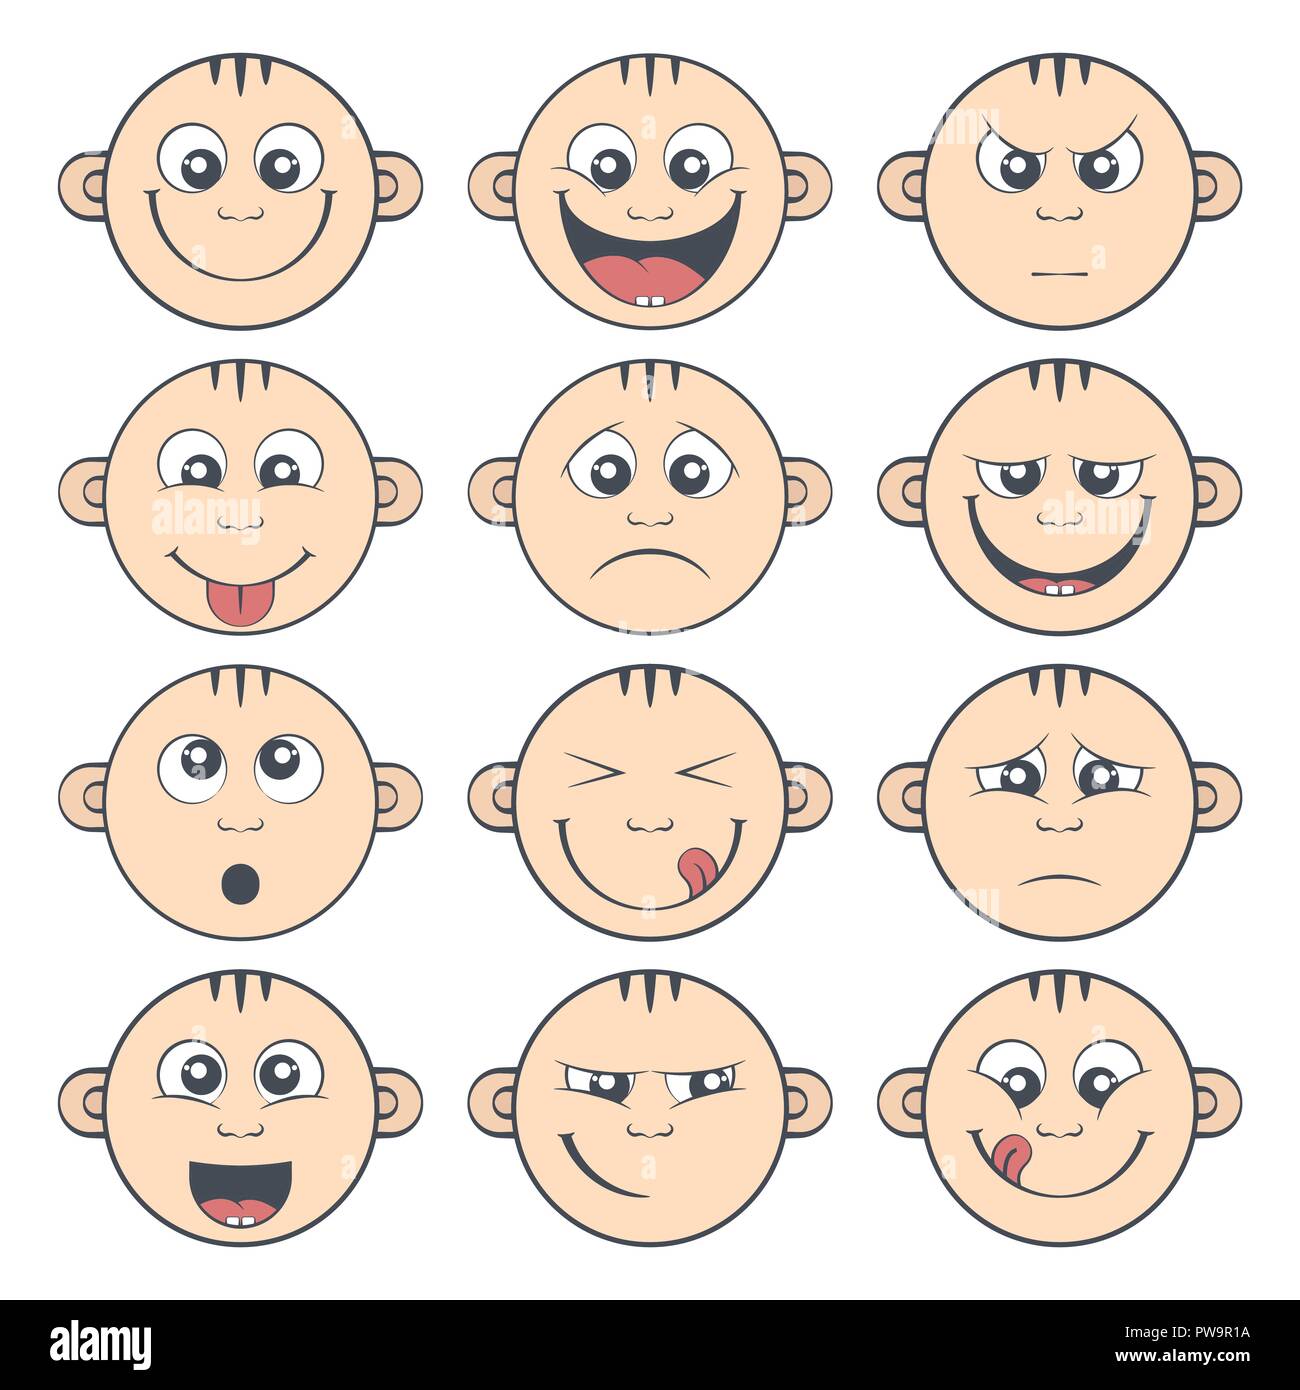 Set of baby smiley. Cute cartoon kids emoticon Stock Vector Image & Art ...